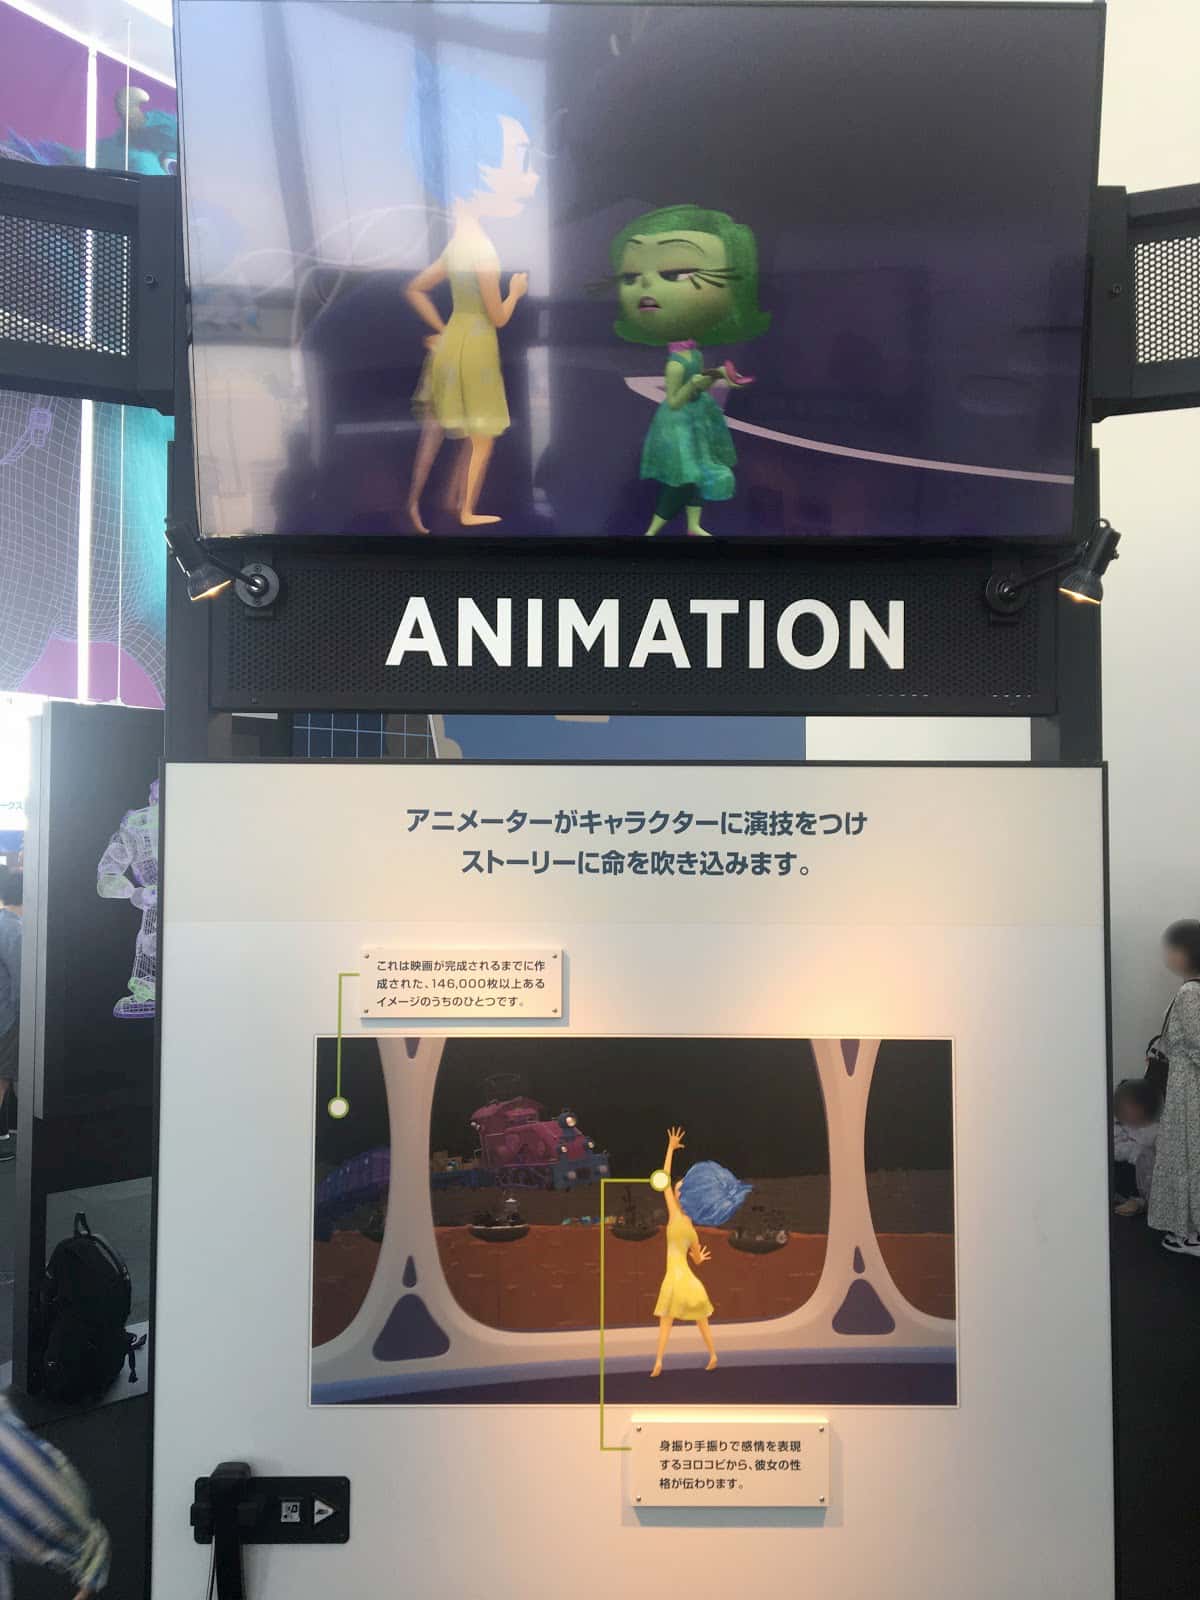 Animation panel